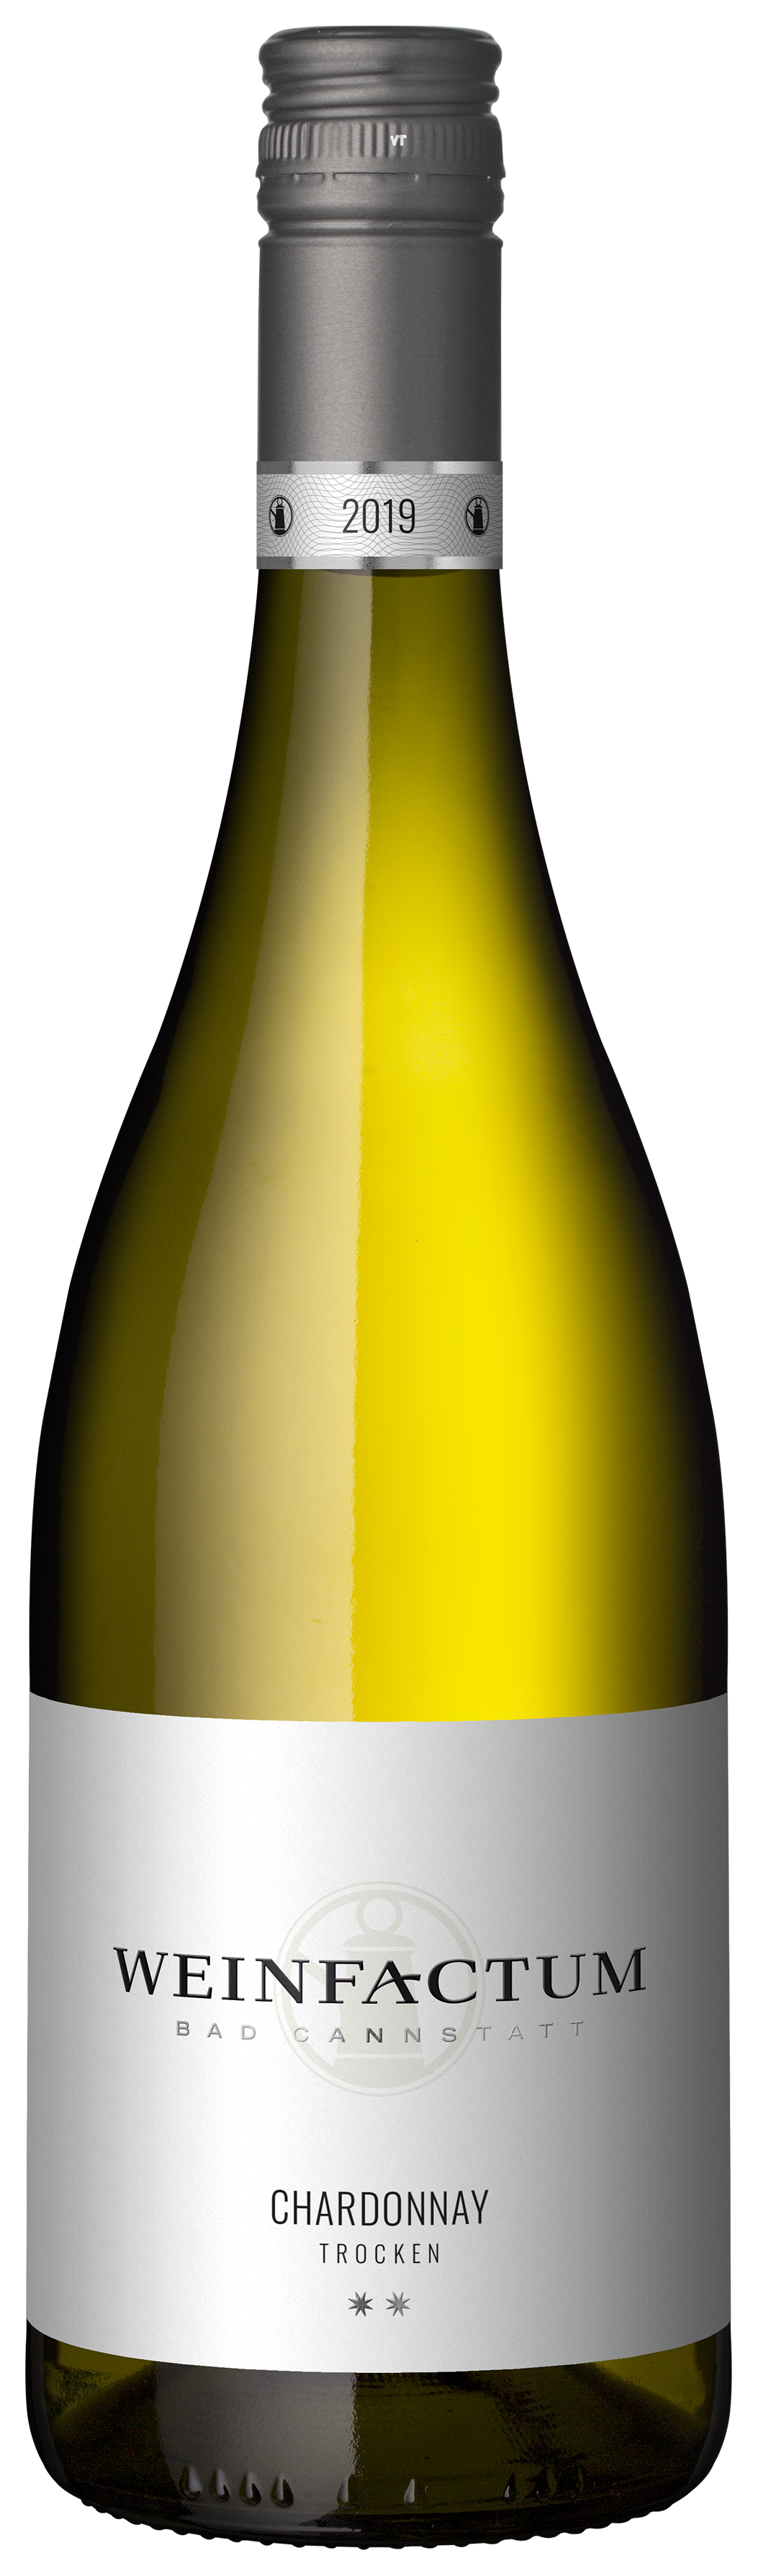 Weinfactum Bad Cannstatt GmbH 2 Stern Chardonnay Qualitätswein trocken 